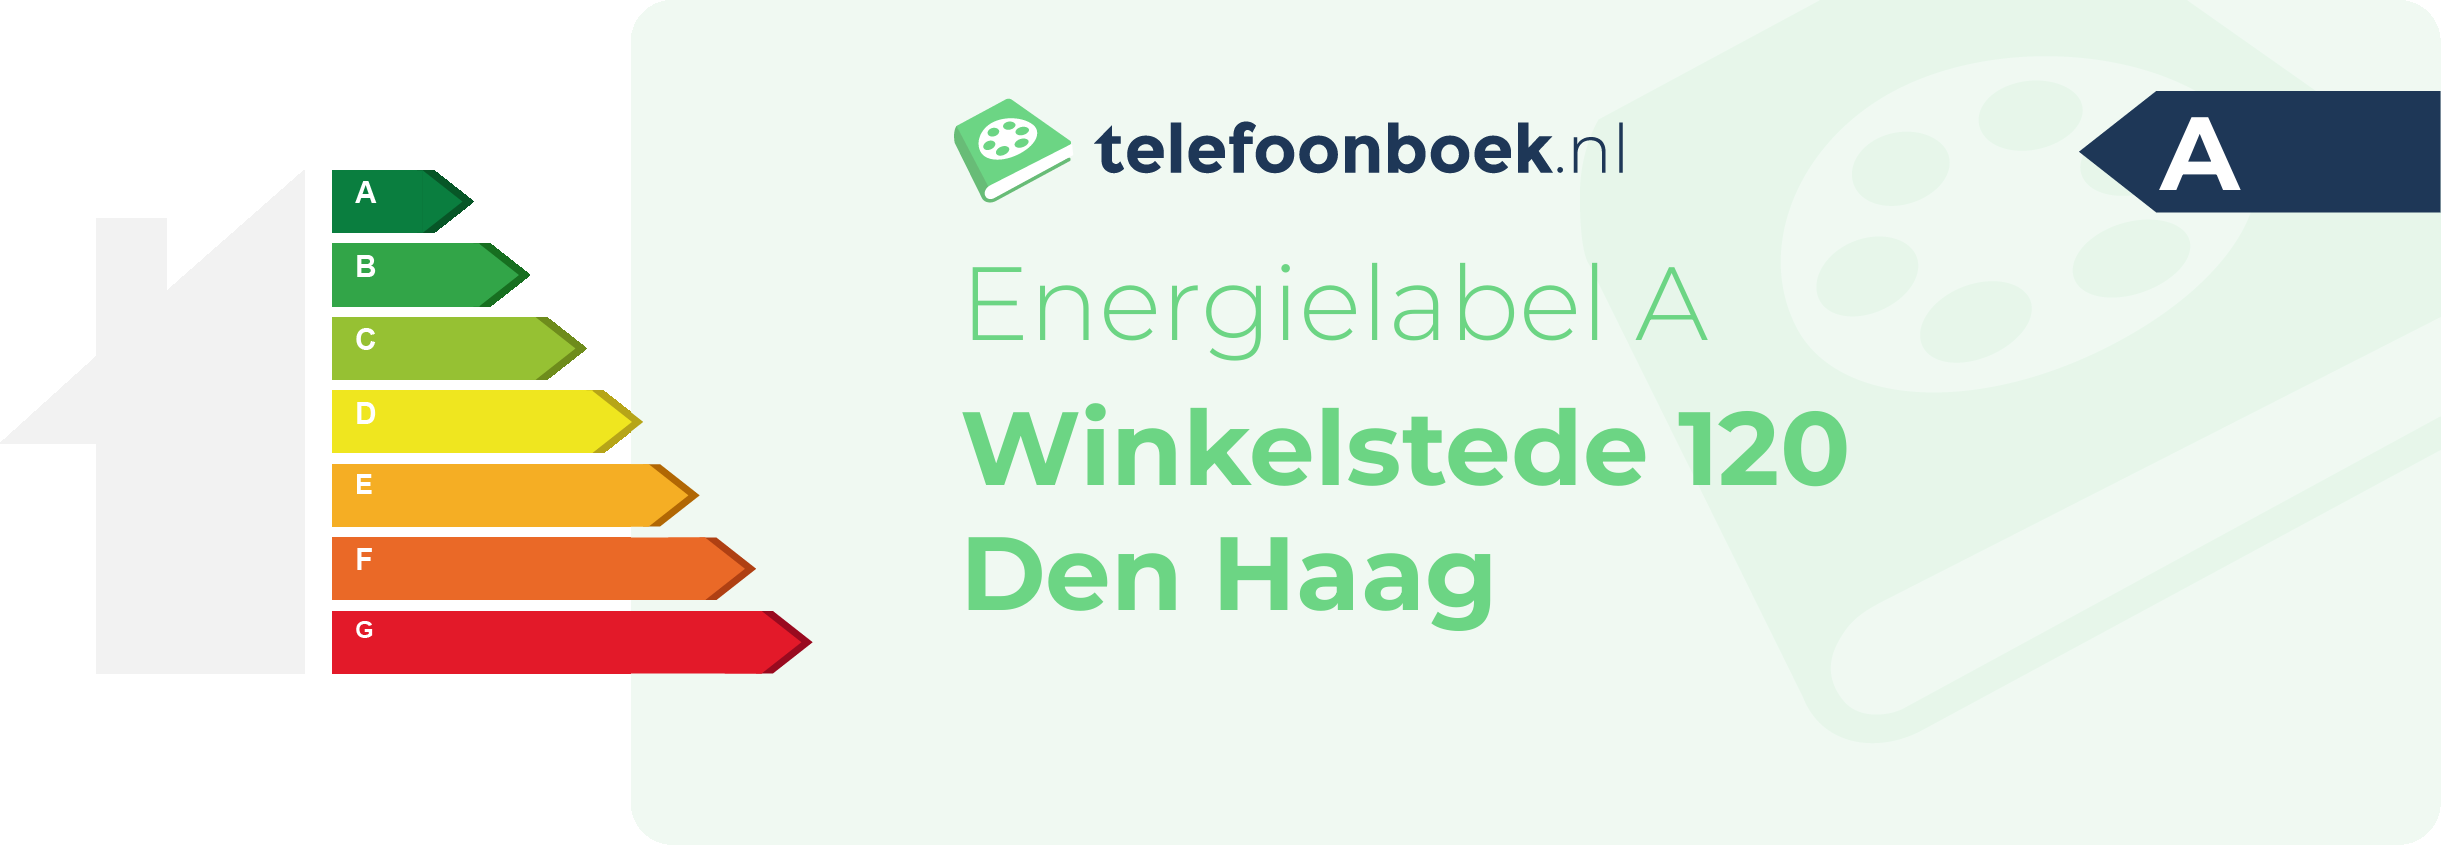 Energielabel Winkelstede 120 Den Haag